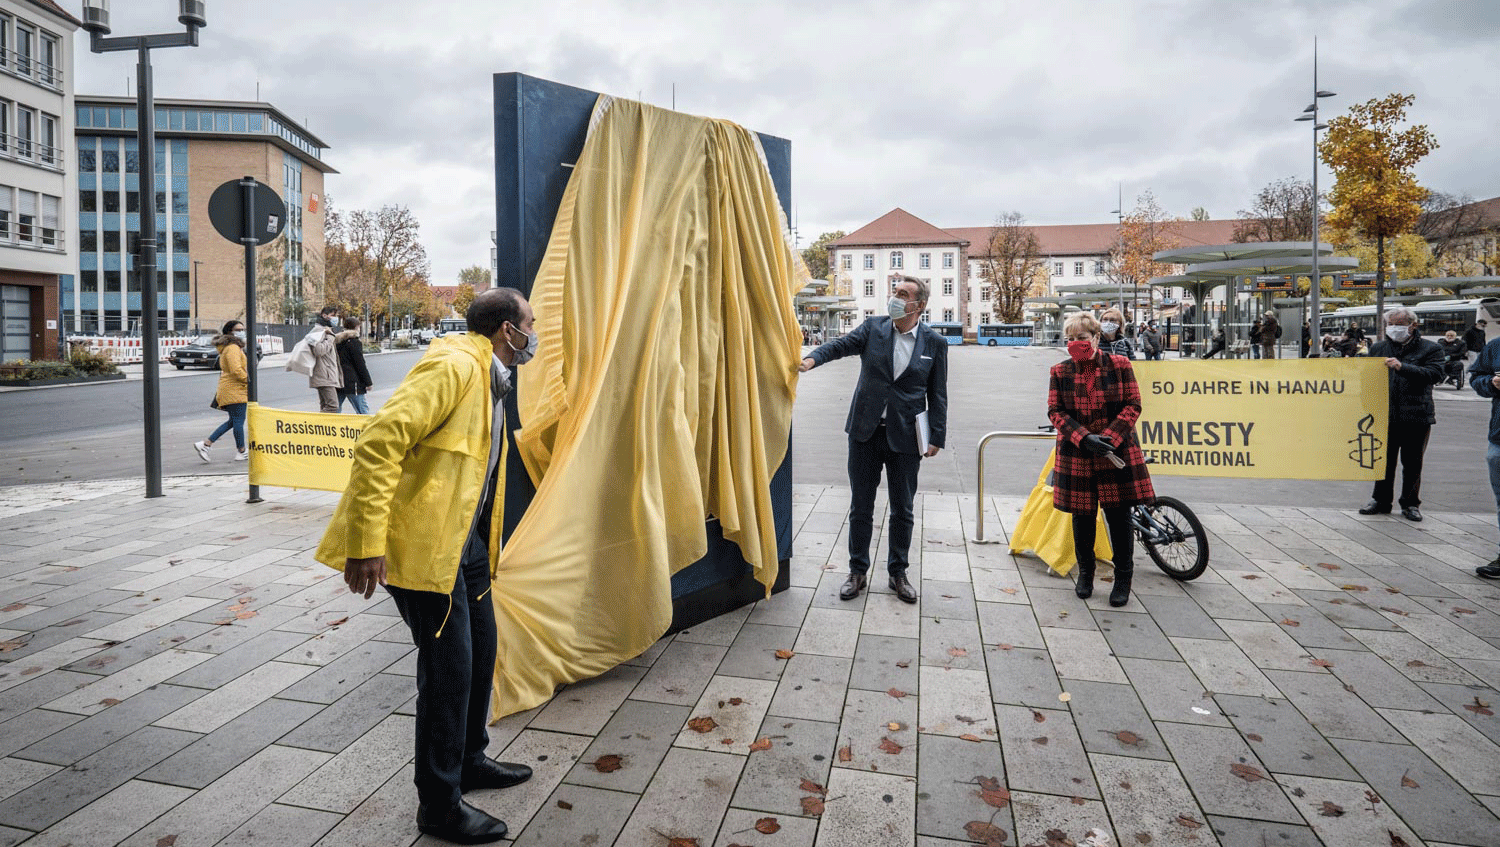 Eine große Version der Menschenrechtserklärung steht auf einem öffentliche Platz, links und rechts davon zwei Personen, sie haben ein gelbes Tuch in der Hand,